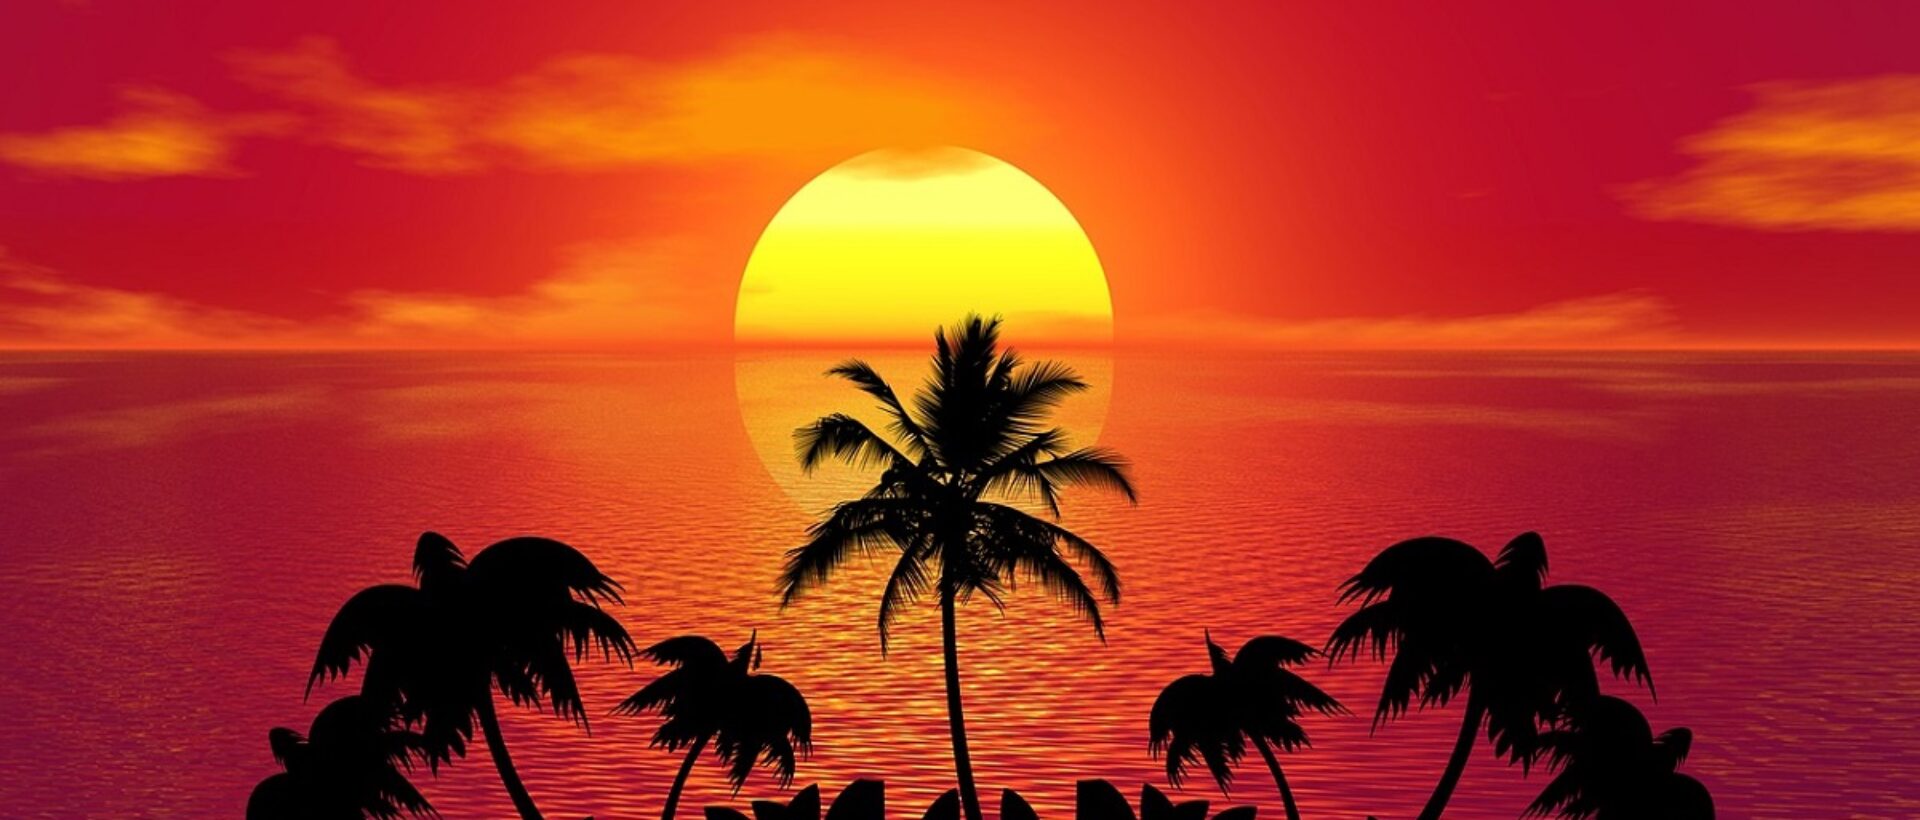 Bild von einem Sonnenuntergang über dem Meer. Im Vordergrund ist eine Insel mit Palmen abgebildet.